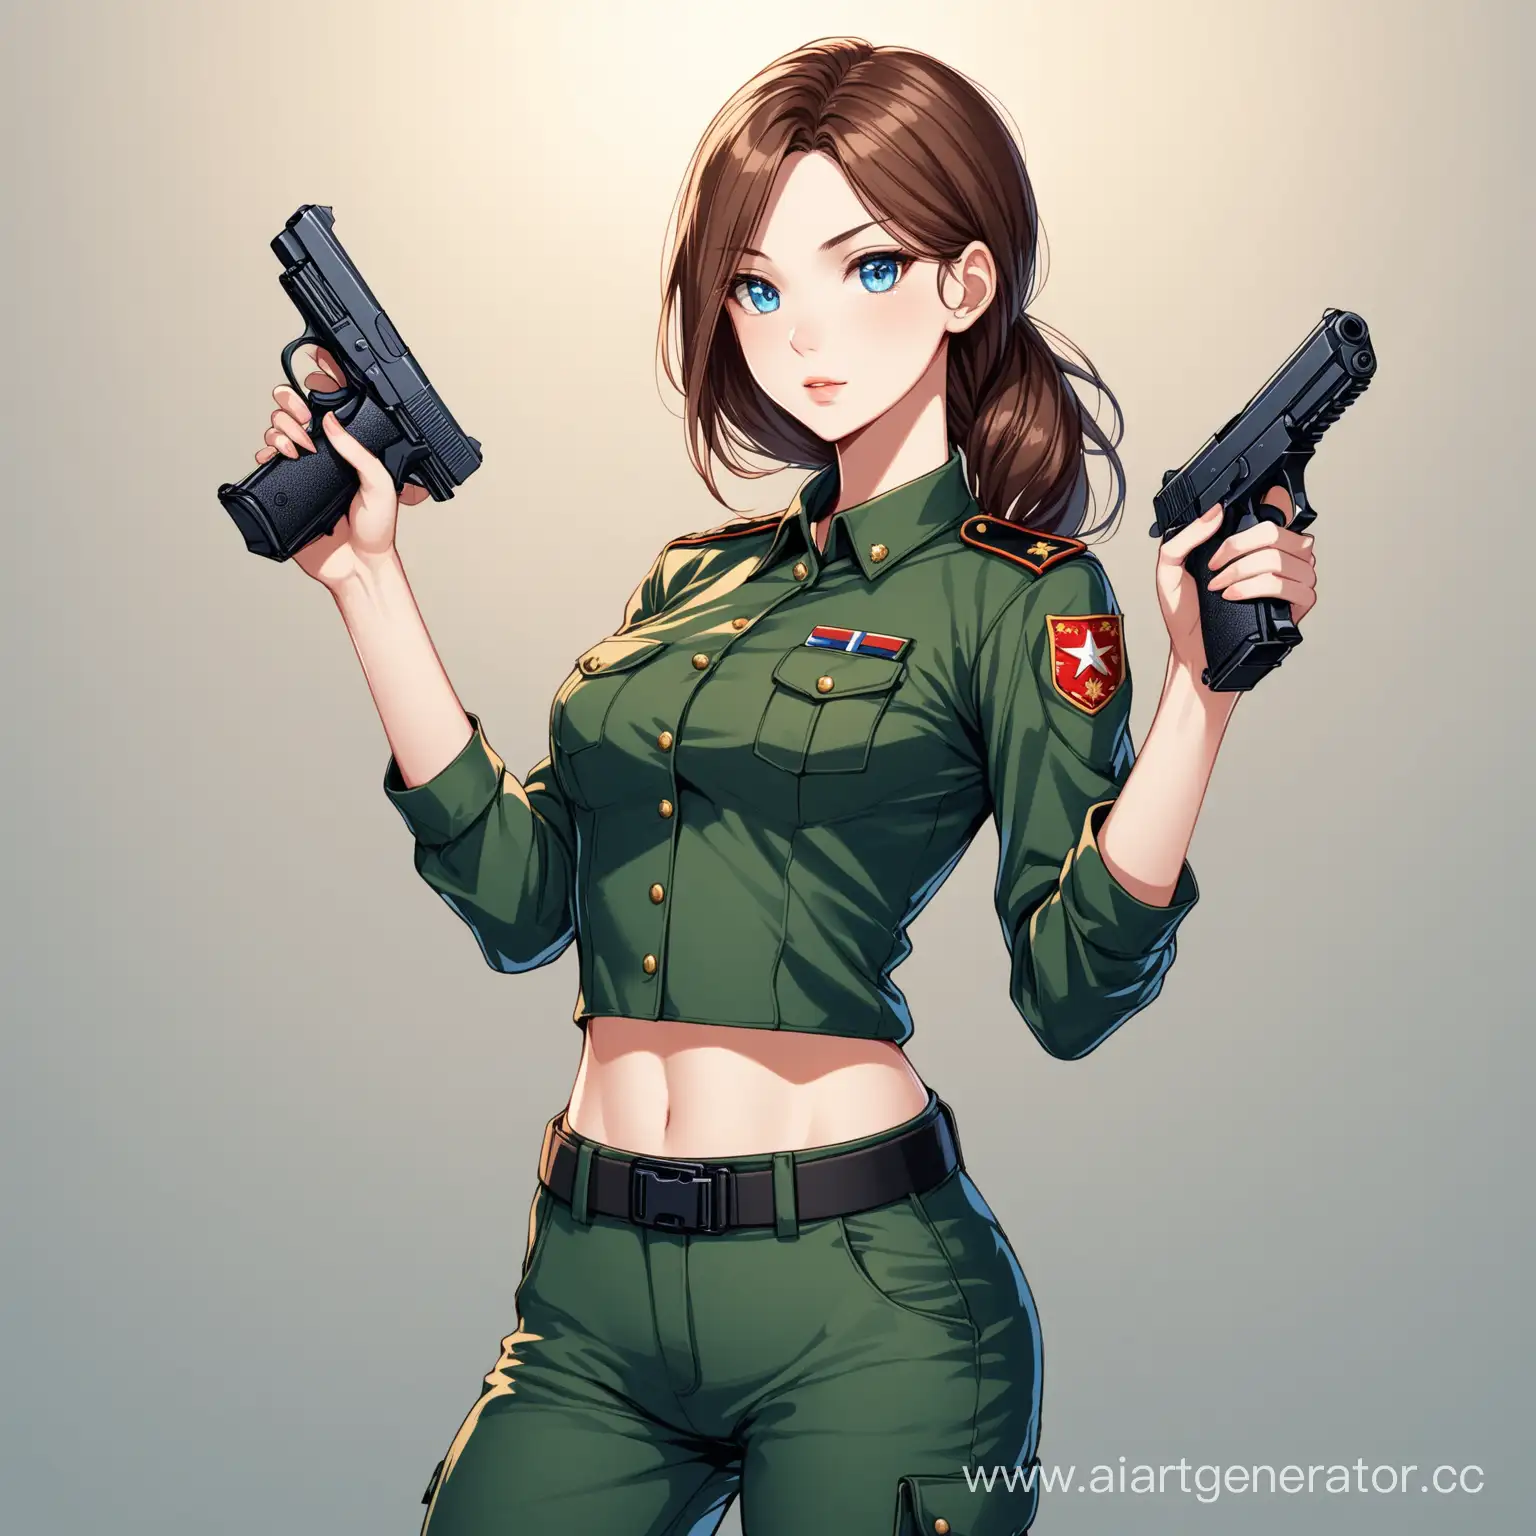 Красивая стройная девушка, с коричневыми волосами и голубыми глазами. На ней брюки и топ военной раскраски. В ее руках пистолет.